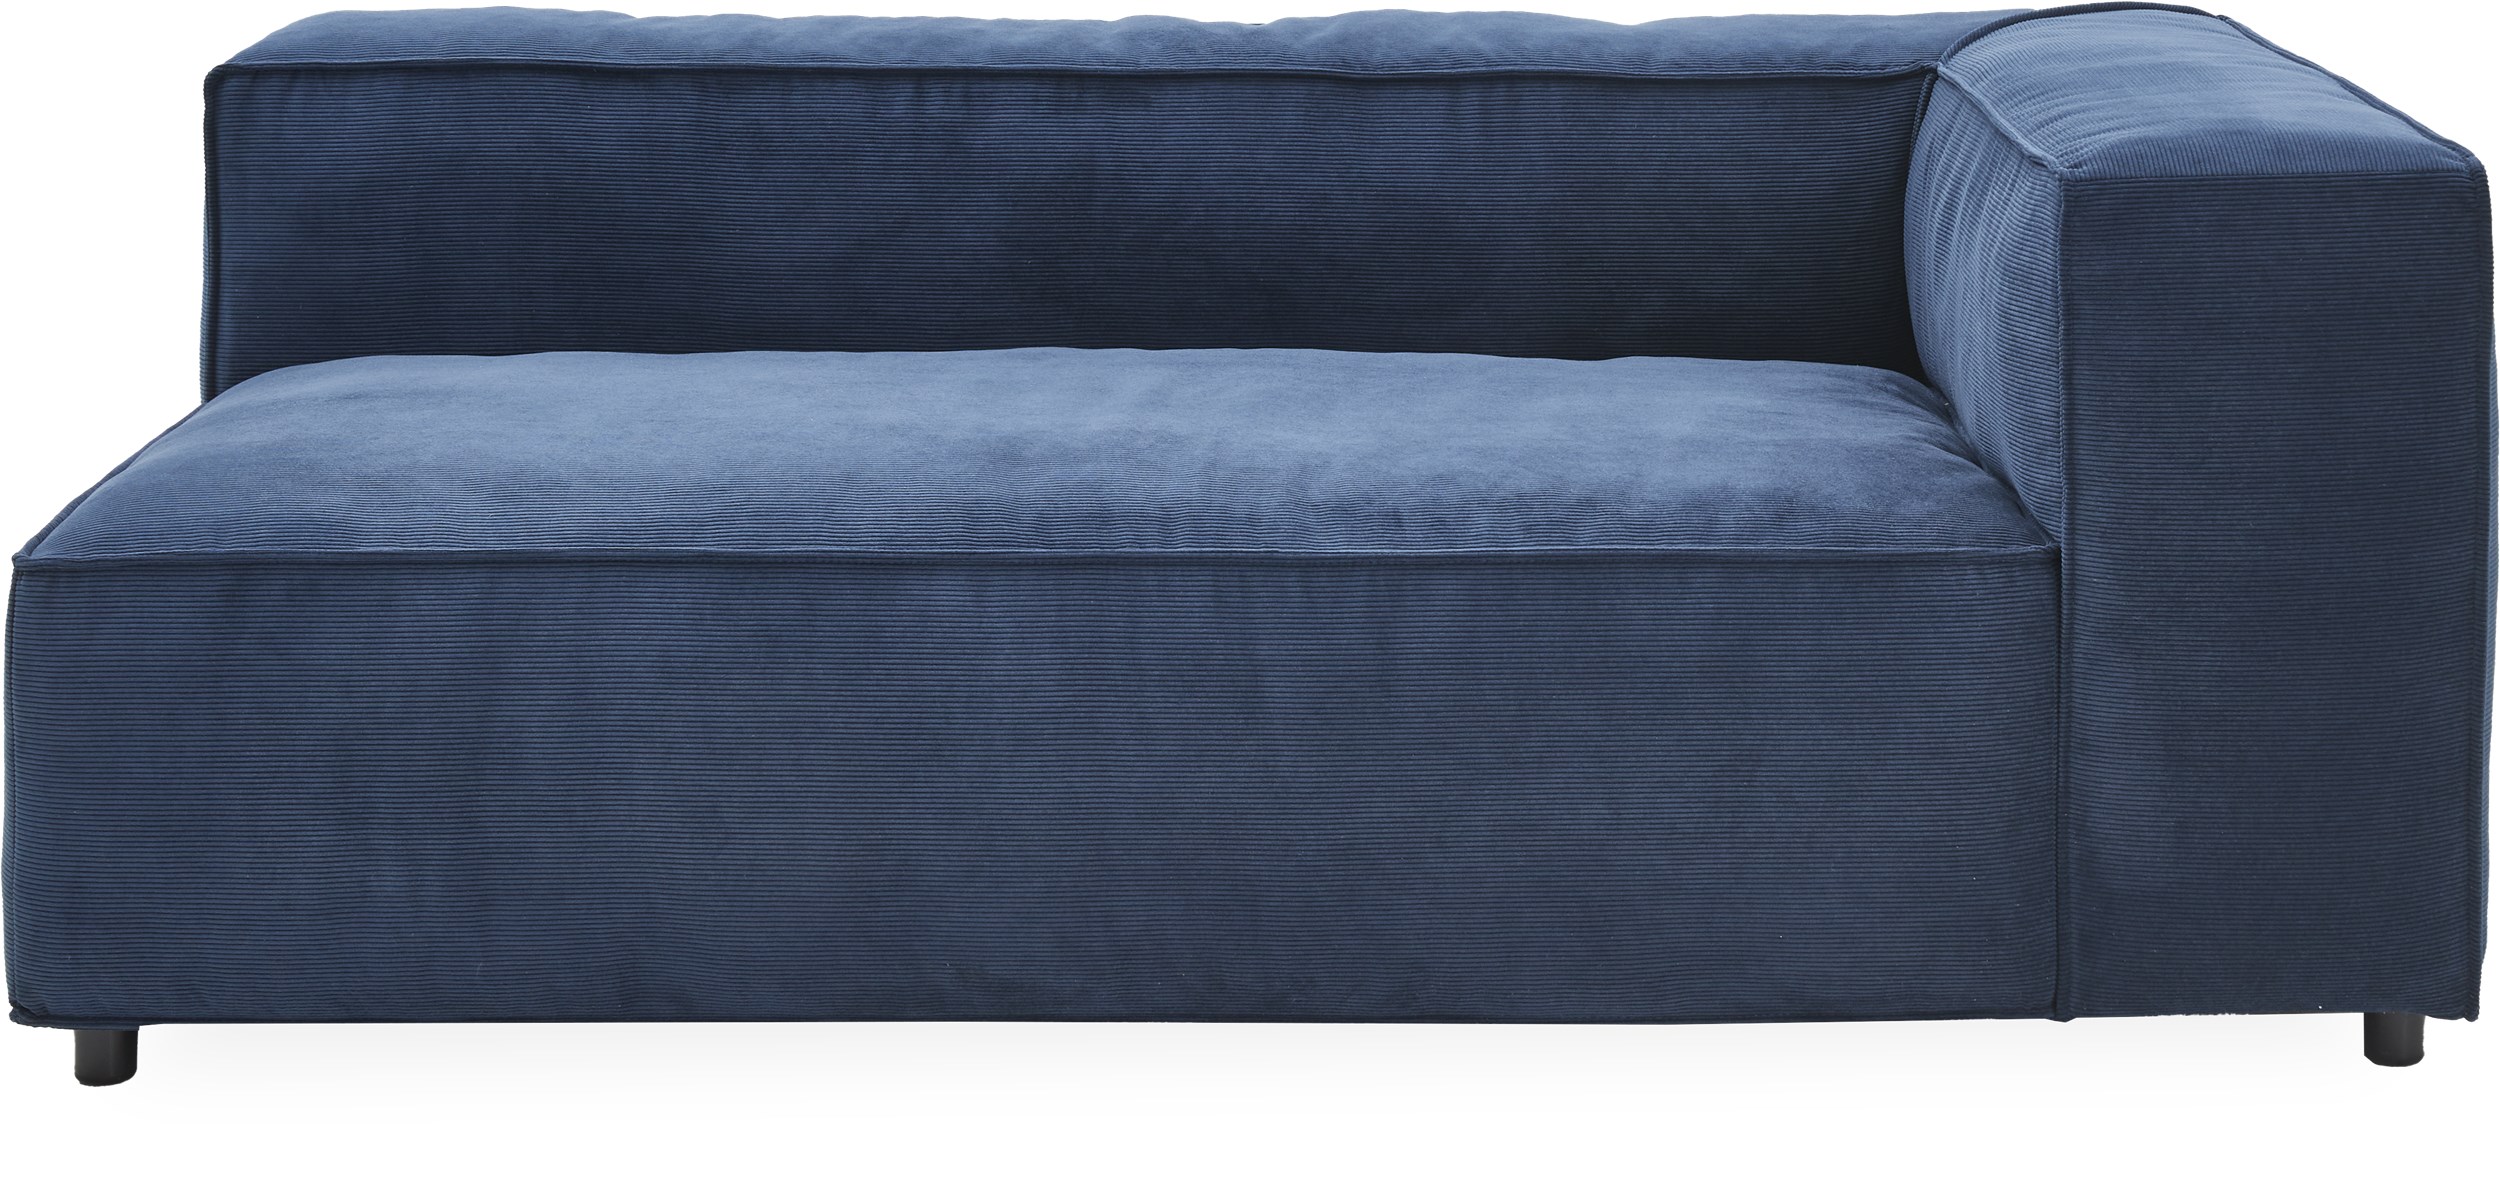 Norstrom Ändmodul - Wave 220 Royal blue textil och ben i svart plast